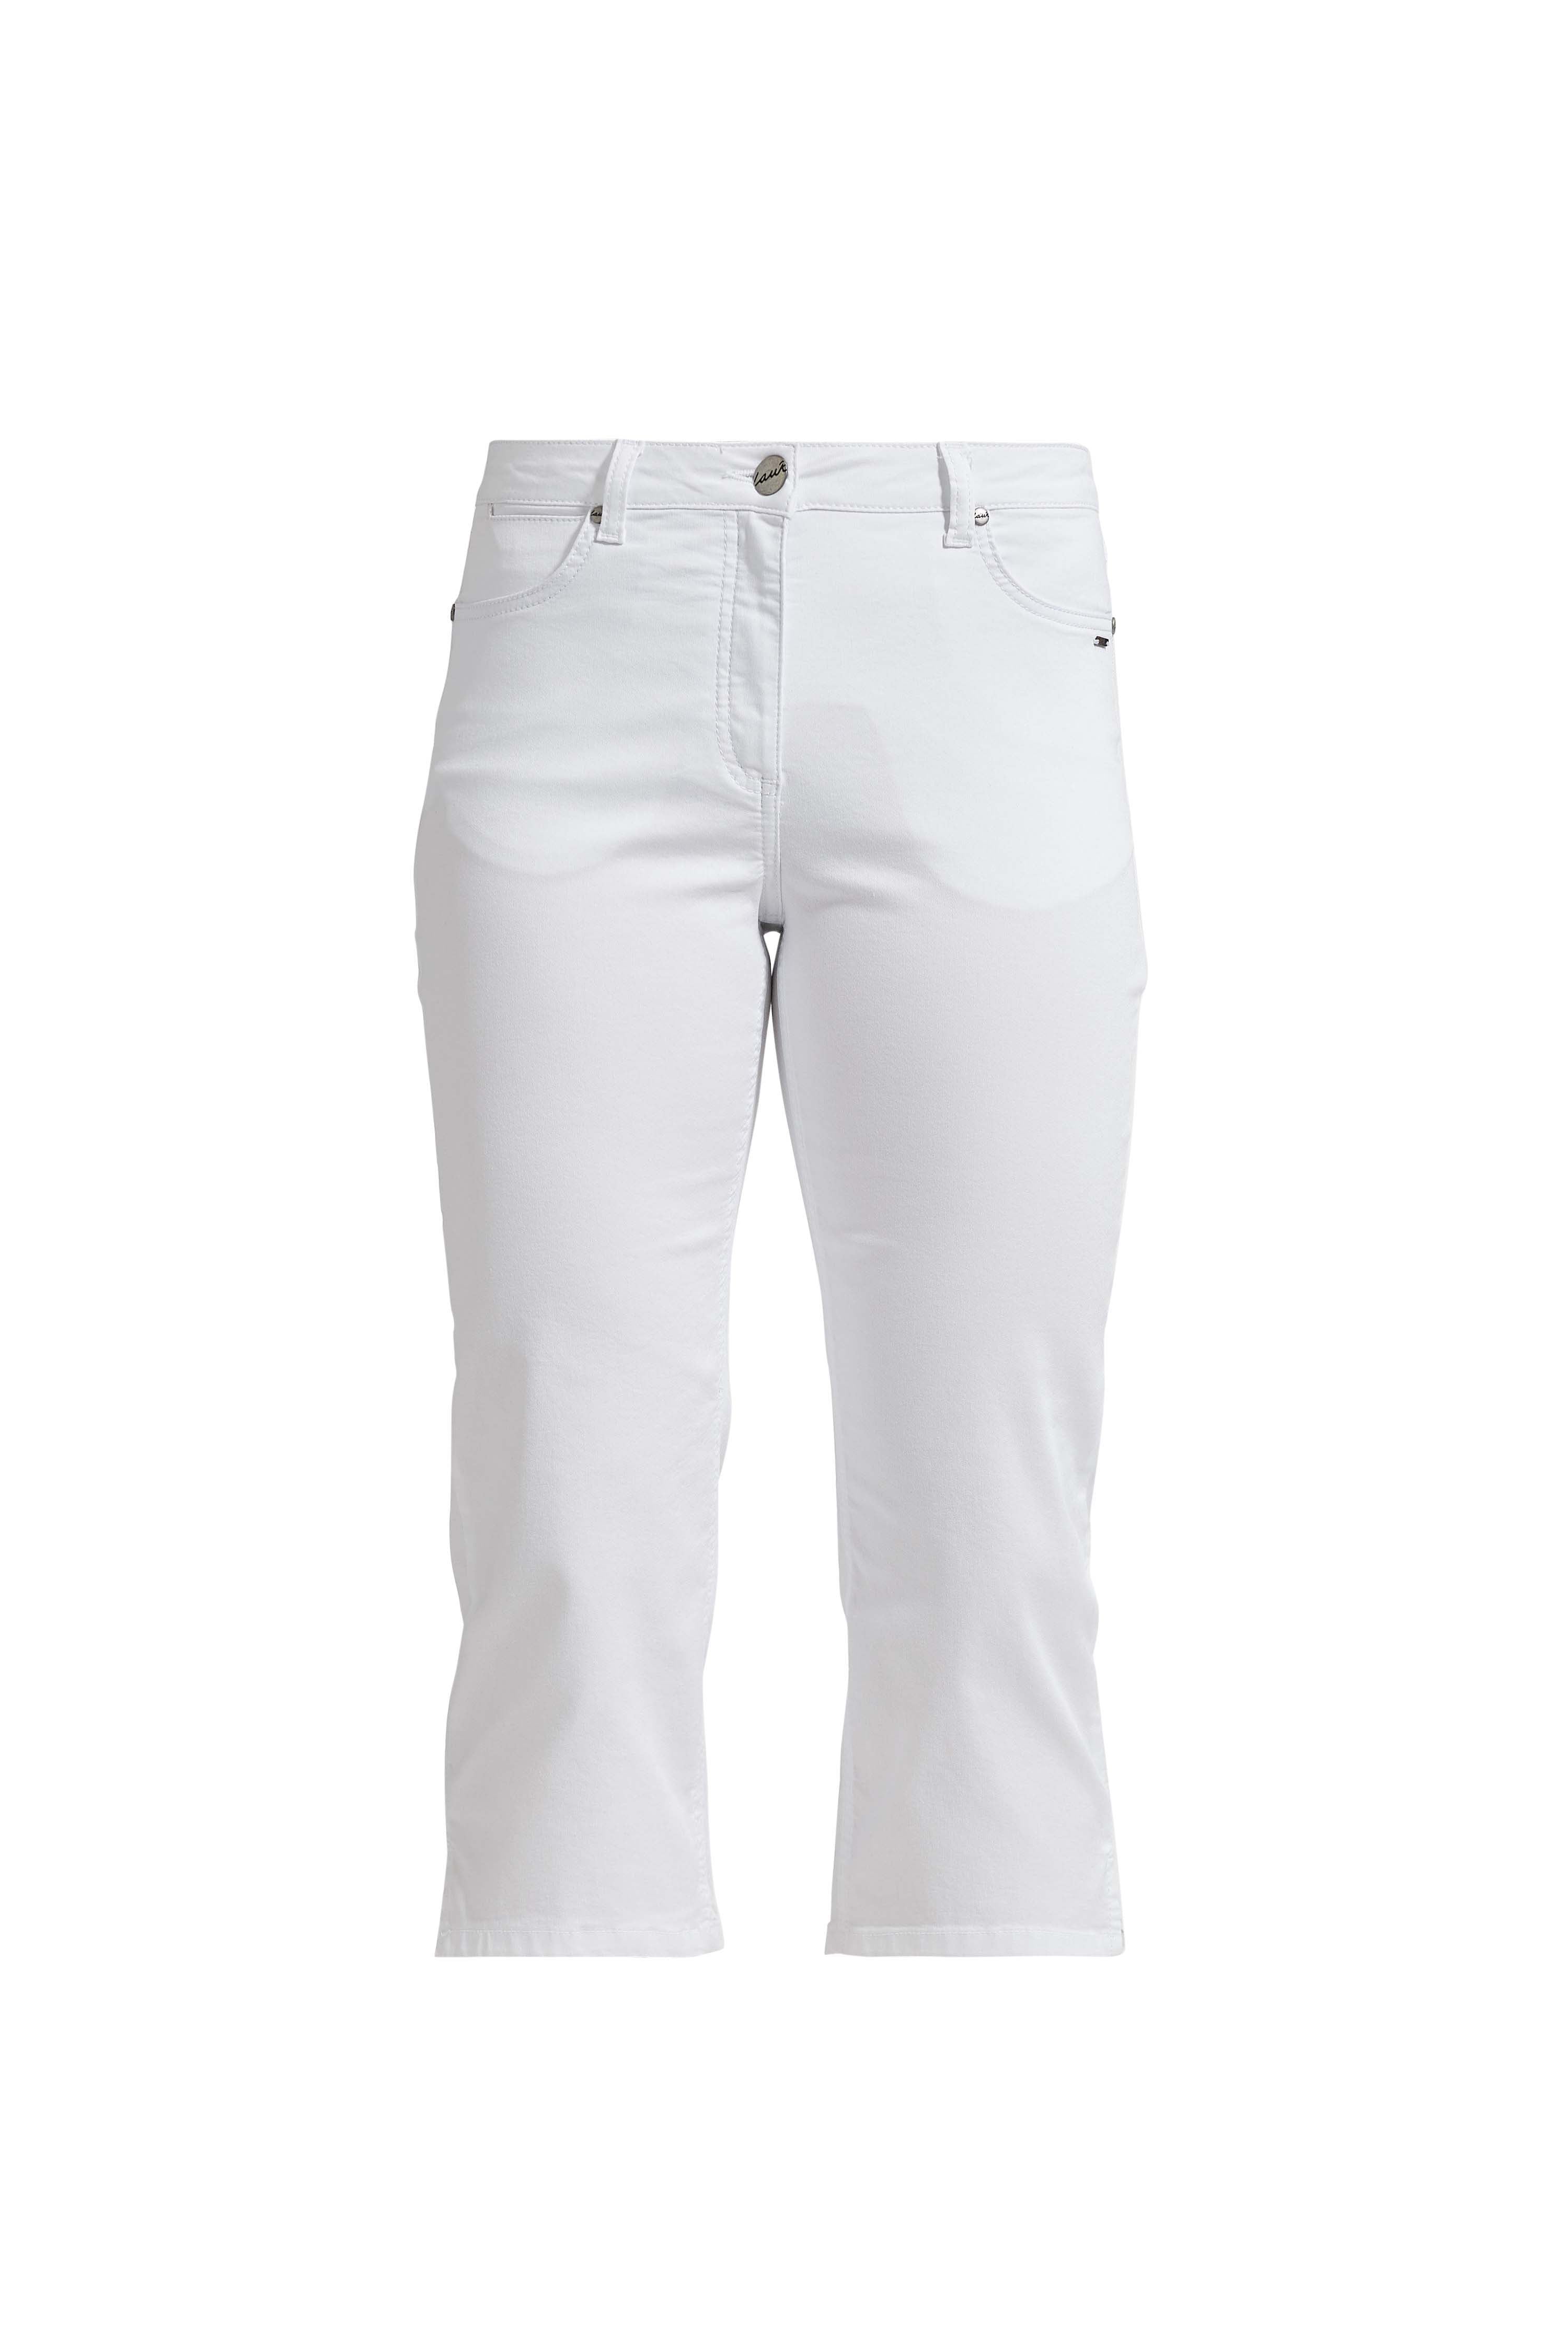 LAURIE  Charlotte Regular Capri Bukser Trousers REGULAR 10100 White